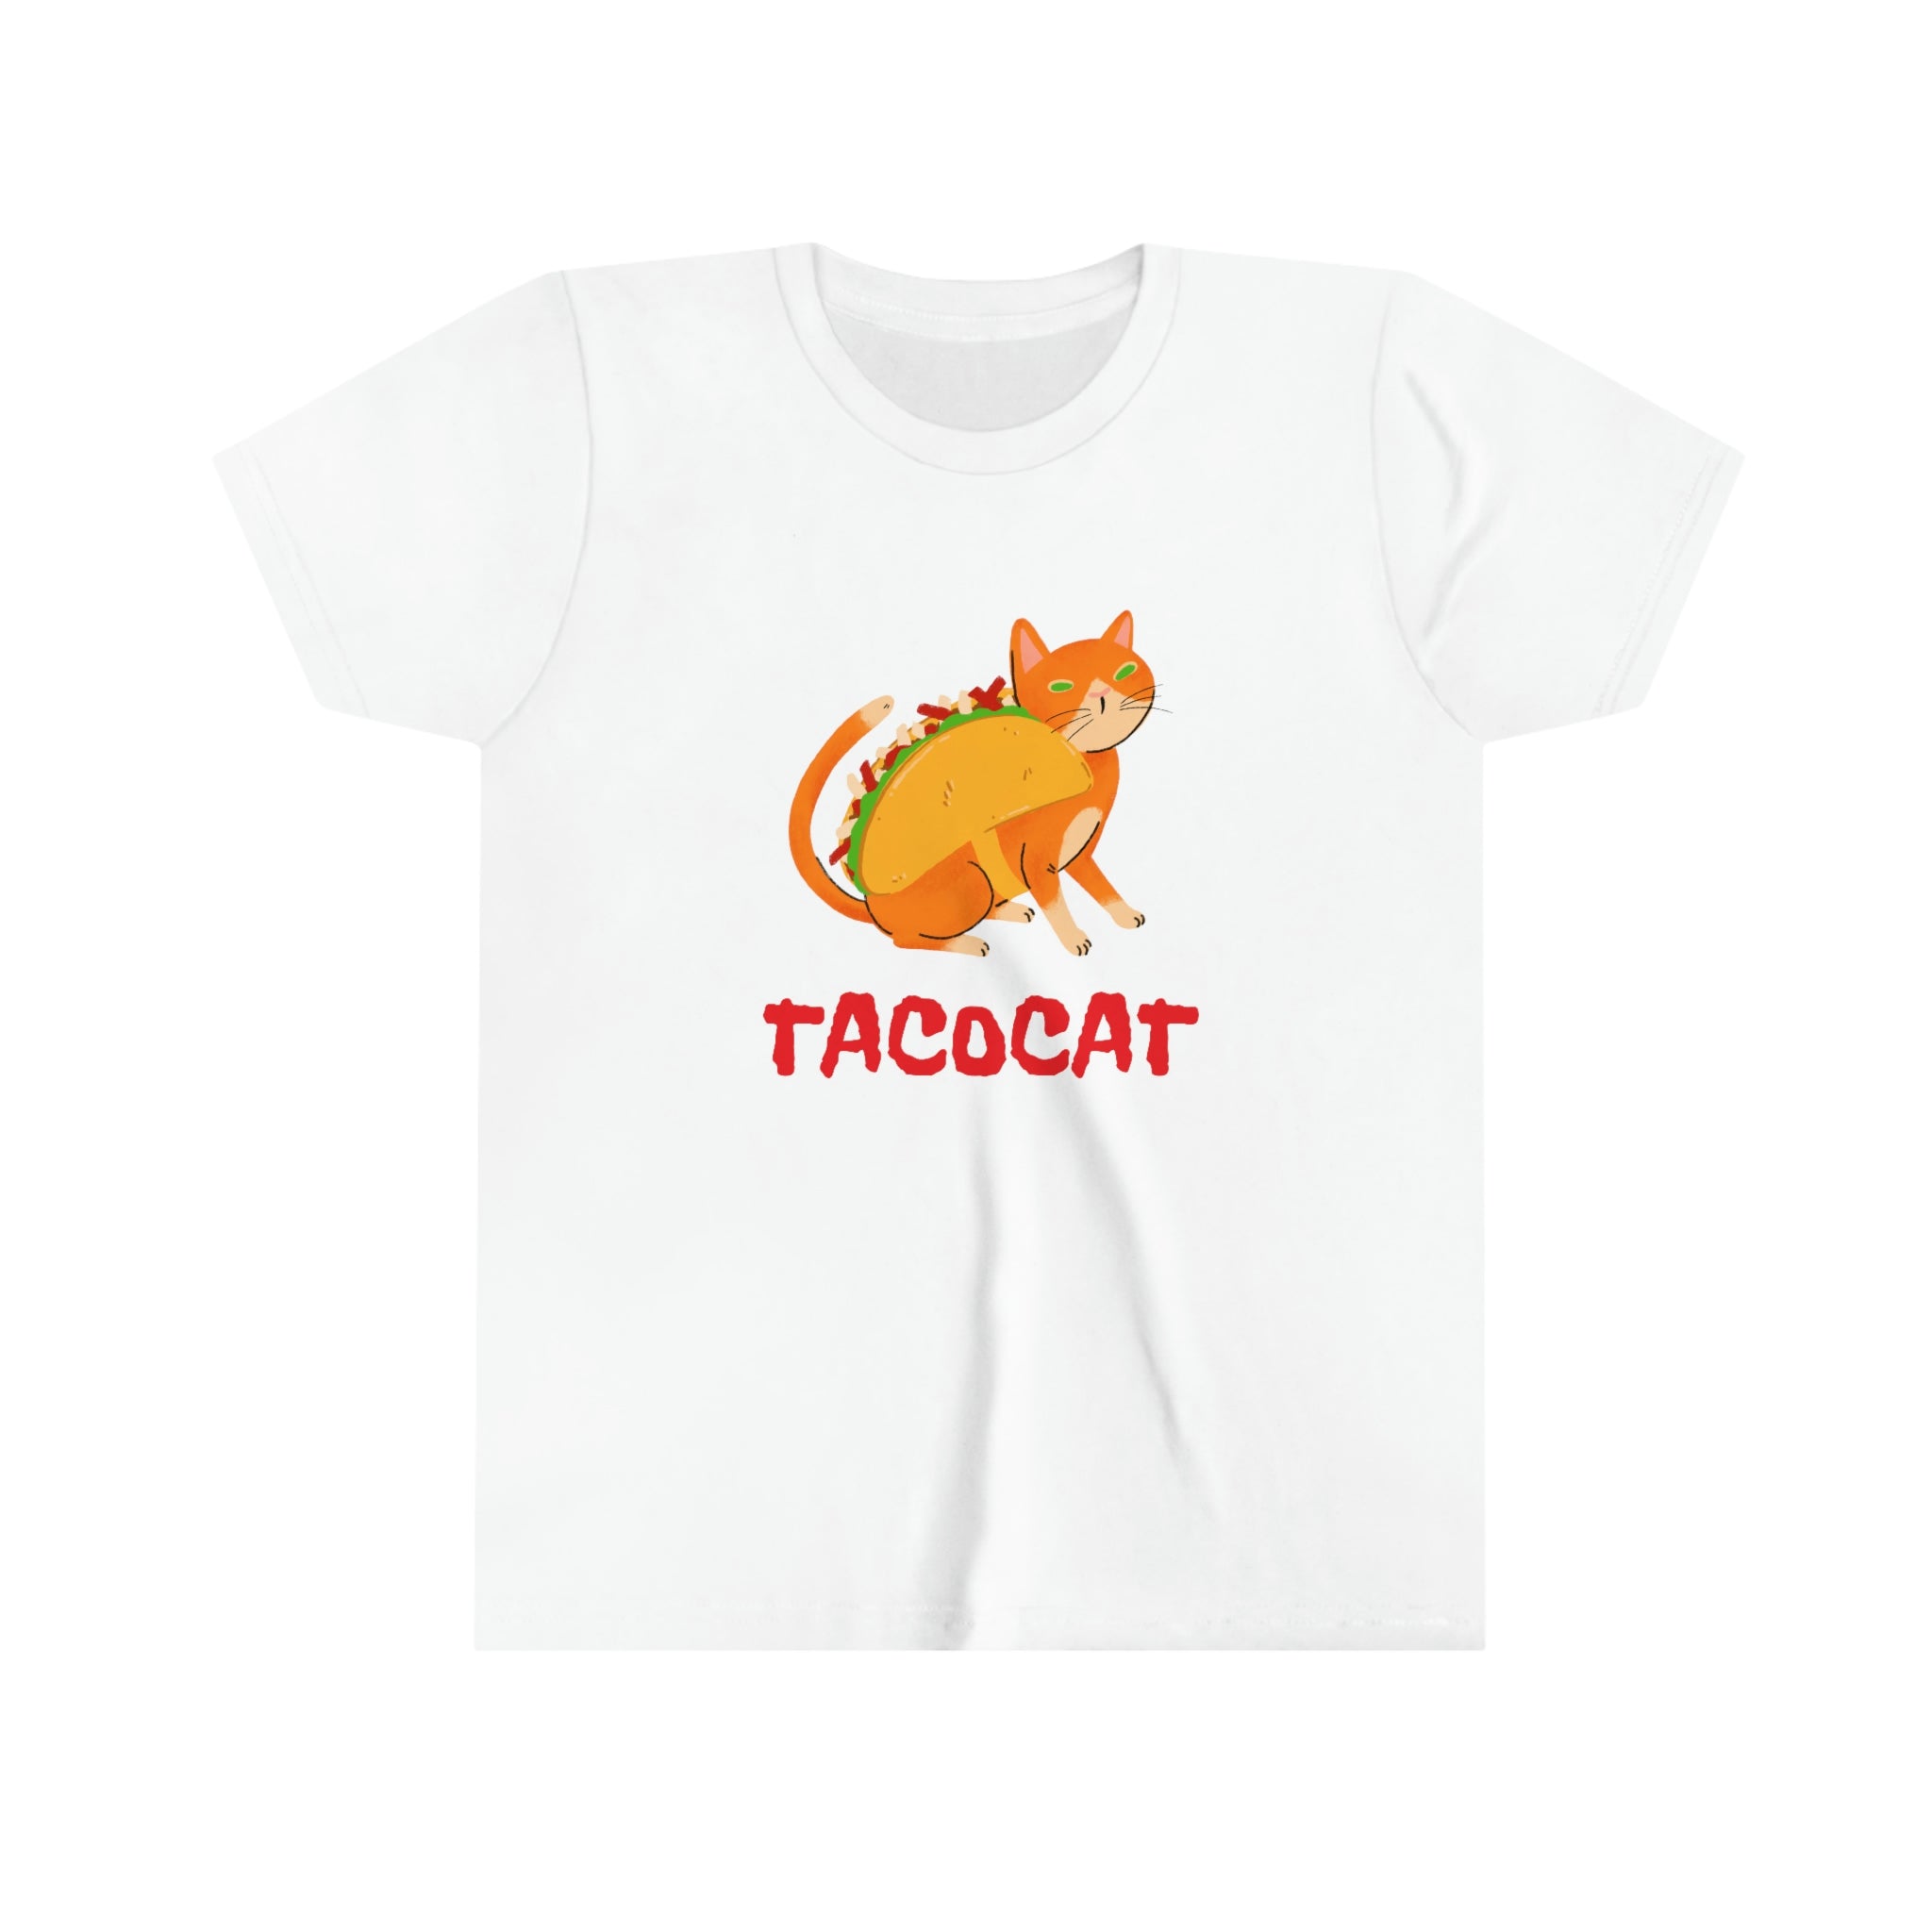 Tacocat Youth Short Sleeve Tee